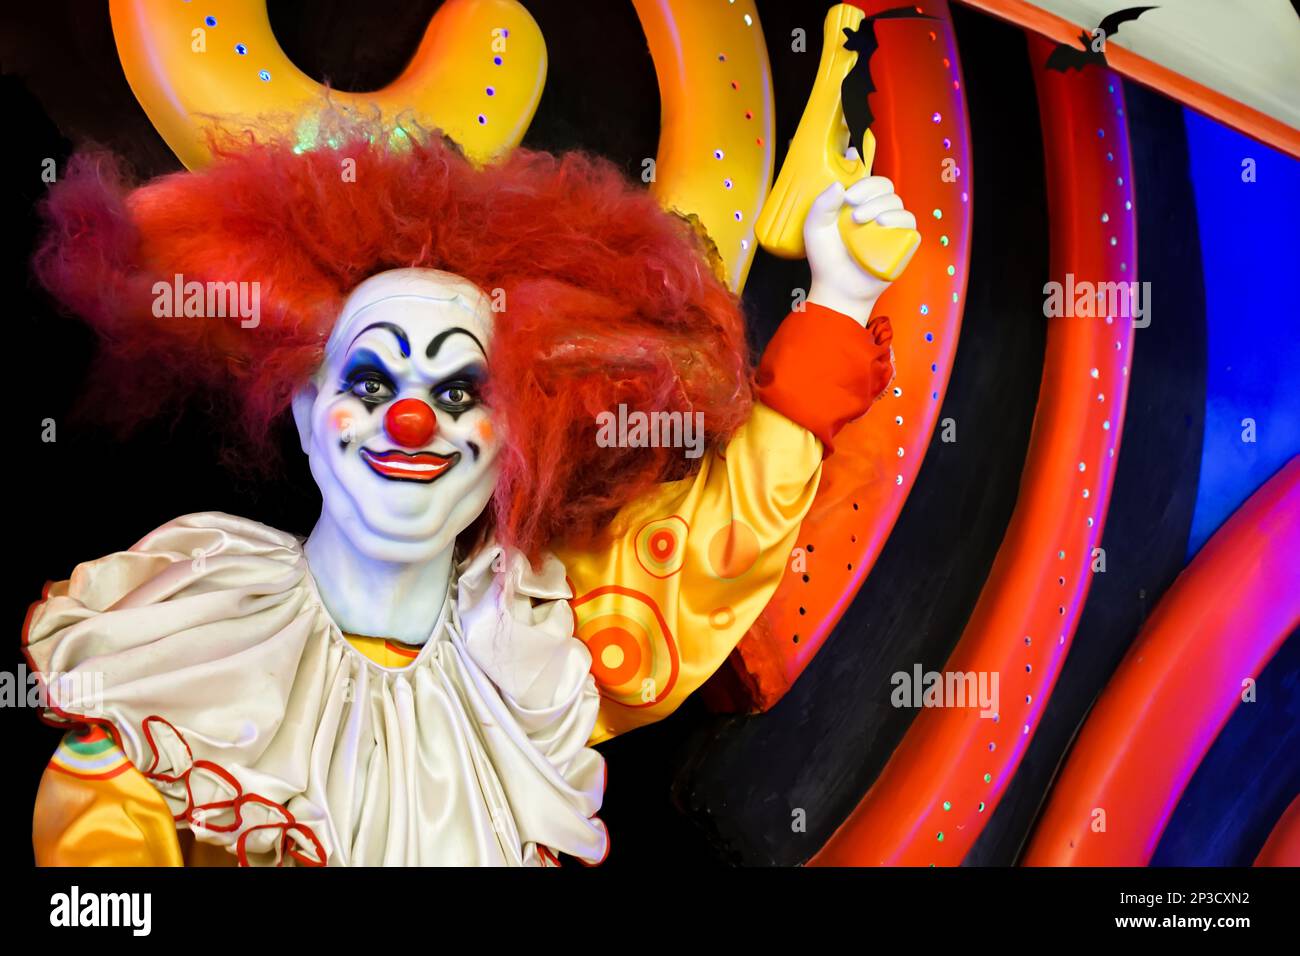 Une poupée de clown souriante regarde dans la caméra avec un pistolet soulevé dans sa main. Photo de haute qualité Banque D'Images